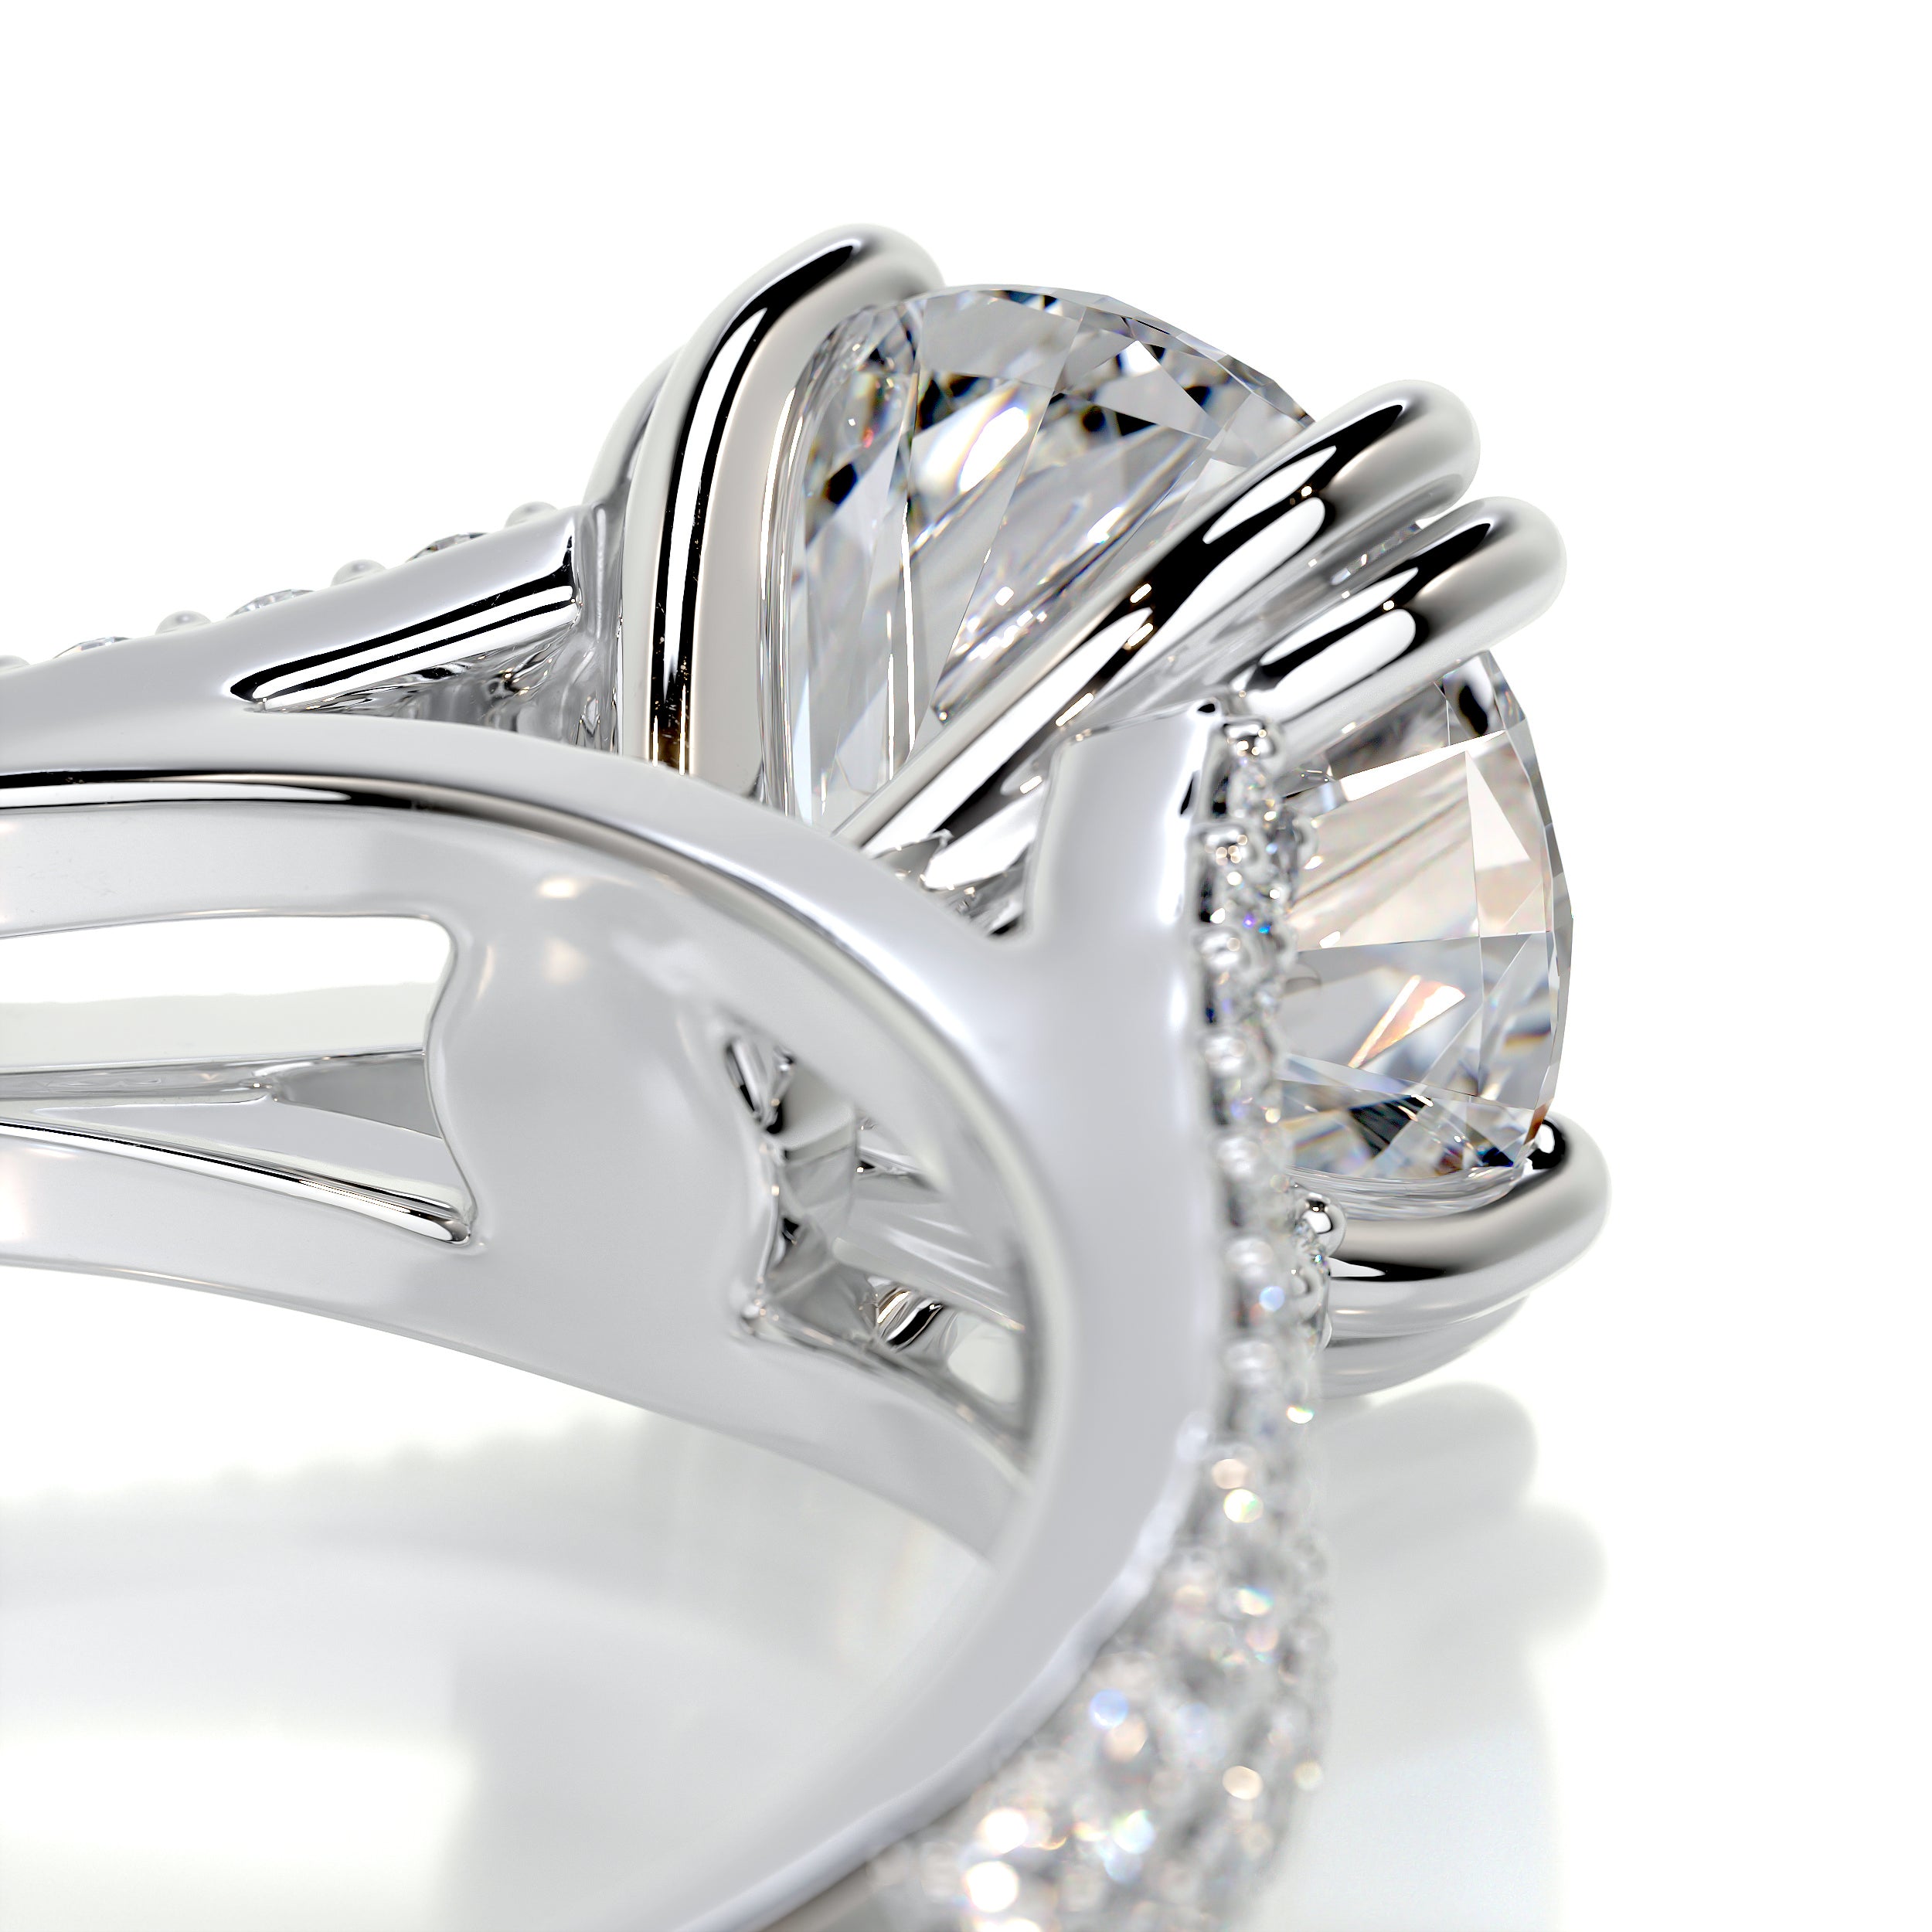 Evelyn Diamond Engagement Ring -14K White Gold